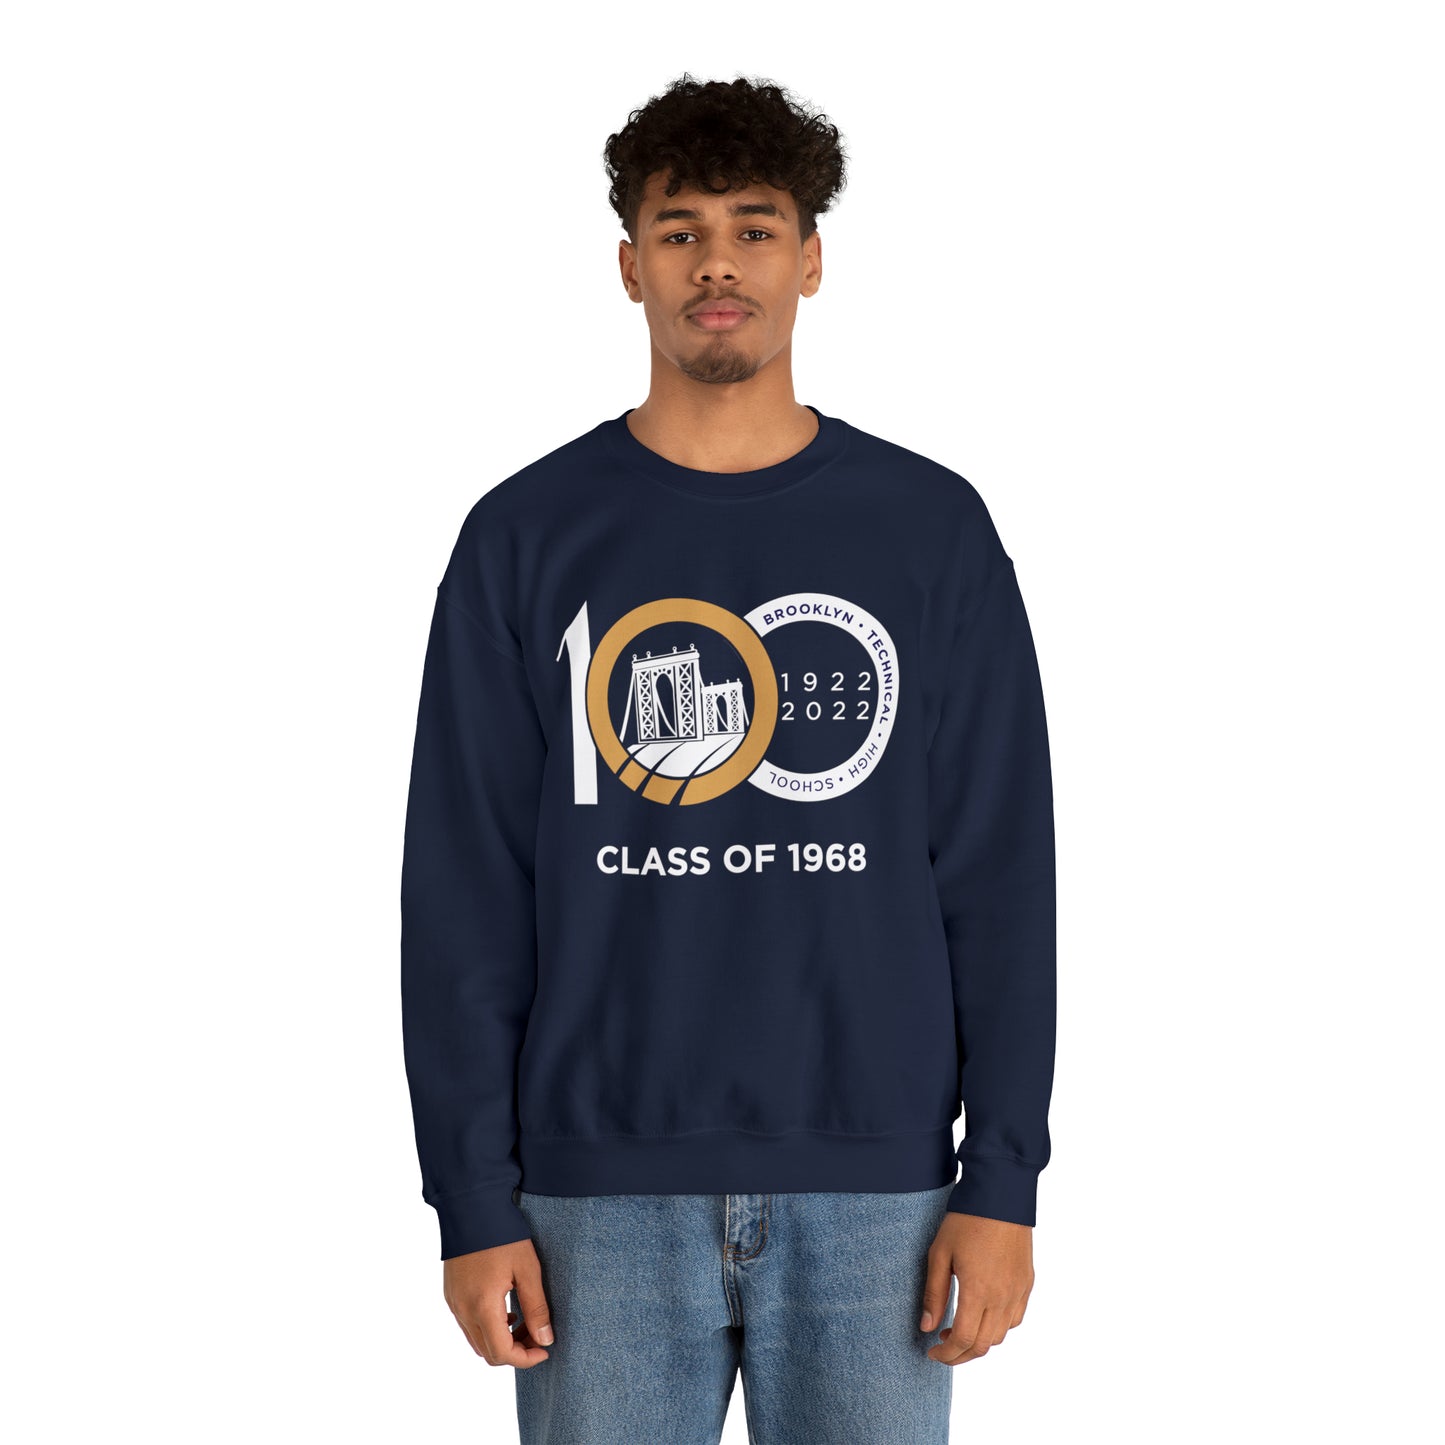 Centennial - Men's Heavy Blend Crewneck Sweatshirt - Class Of 1968